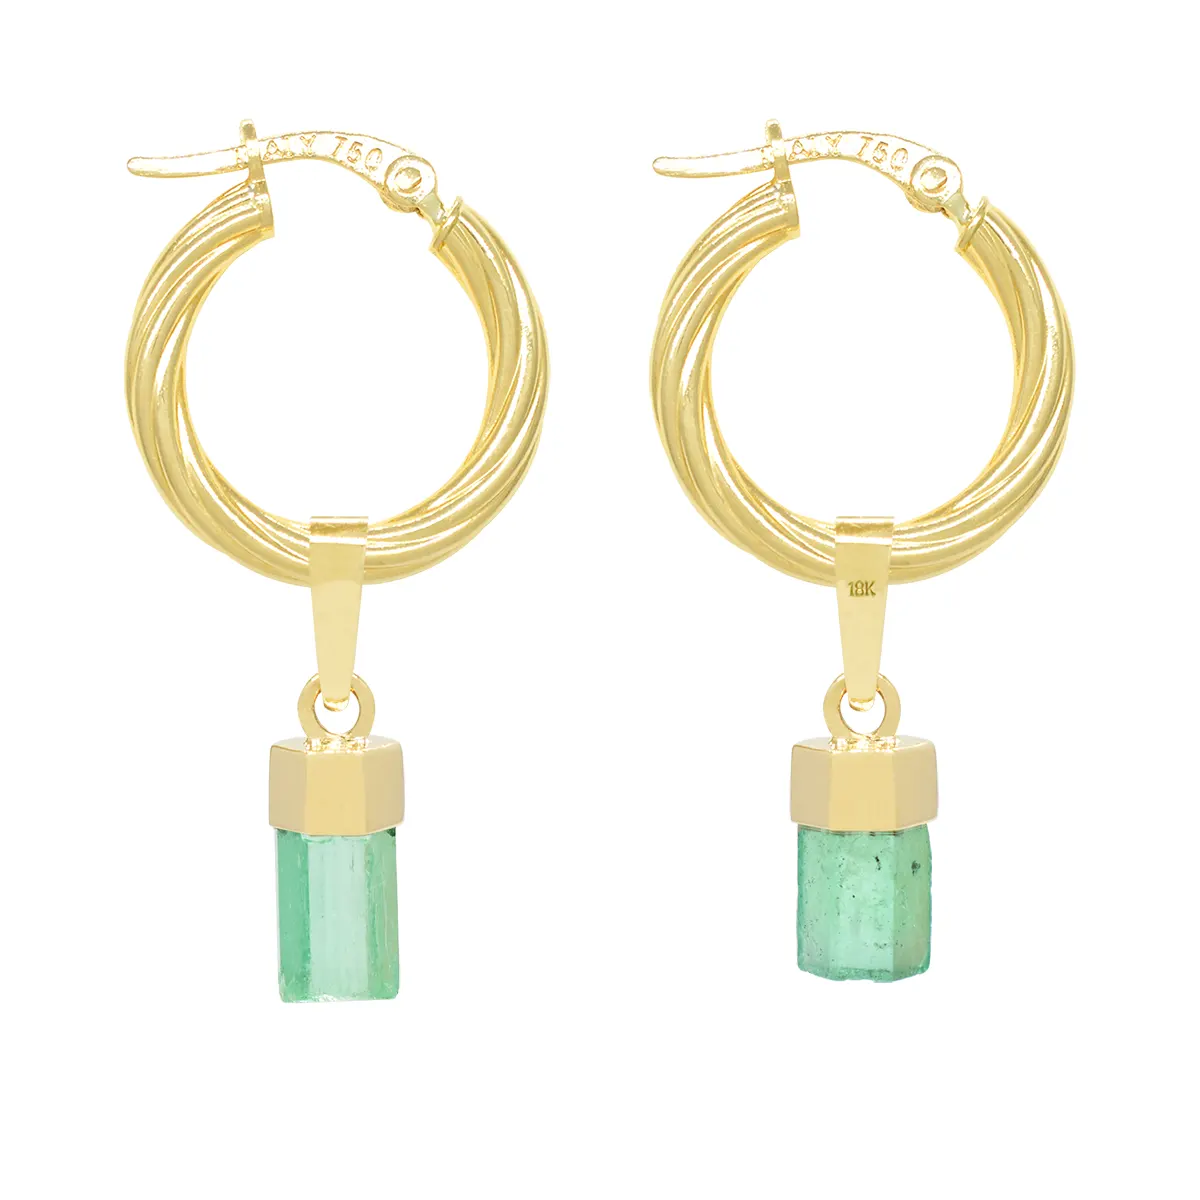 Uncut Natural Emeralds in 18K Gold Hoop Earrings